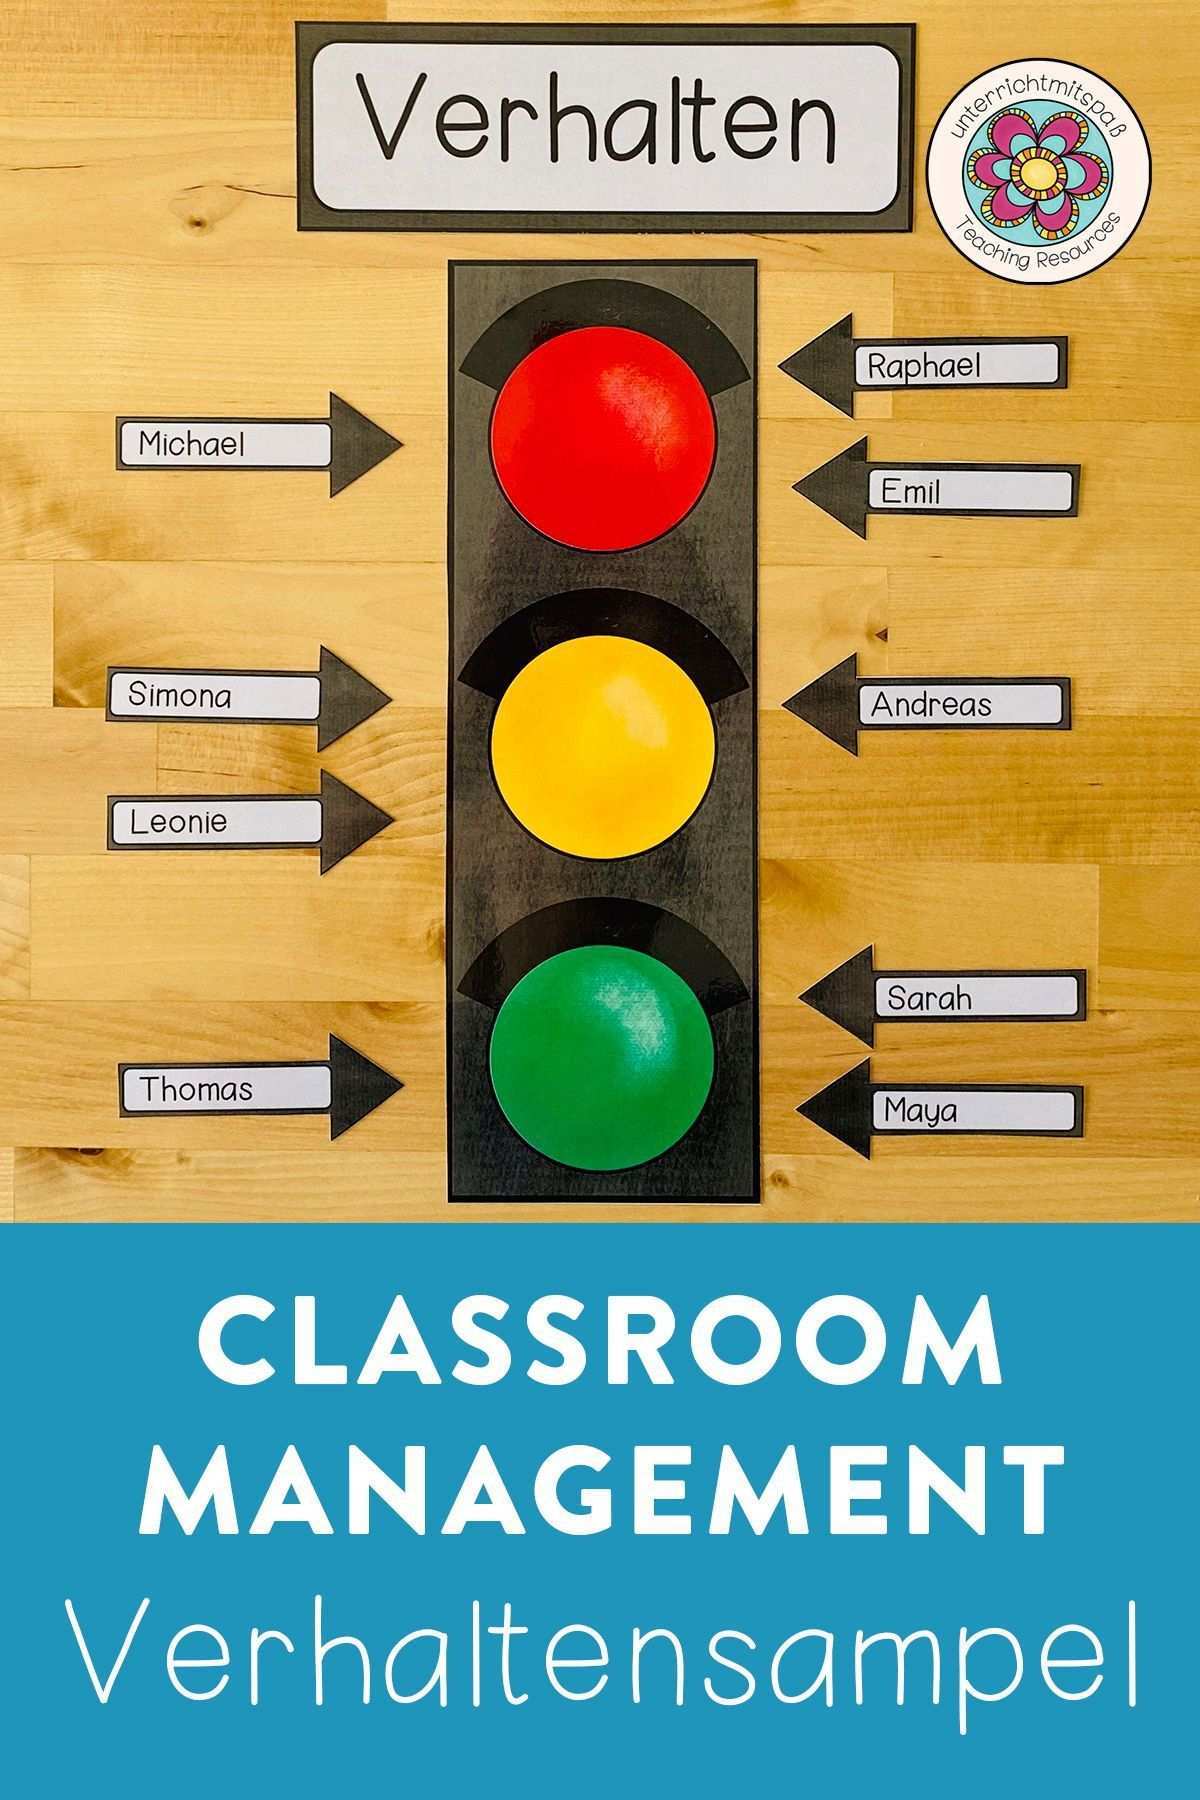 Verhaltensampel Zum Classroom Management In Der Schule Unterrichtsmaterialien Geschenke Fur Schuler Leseforderung Unterrichtsmaterial